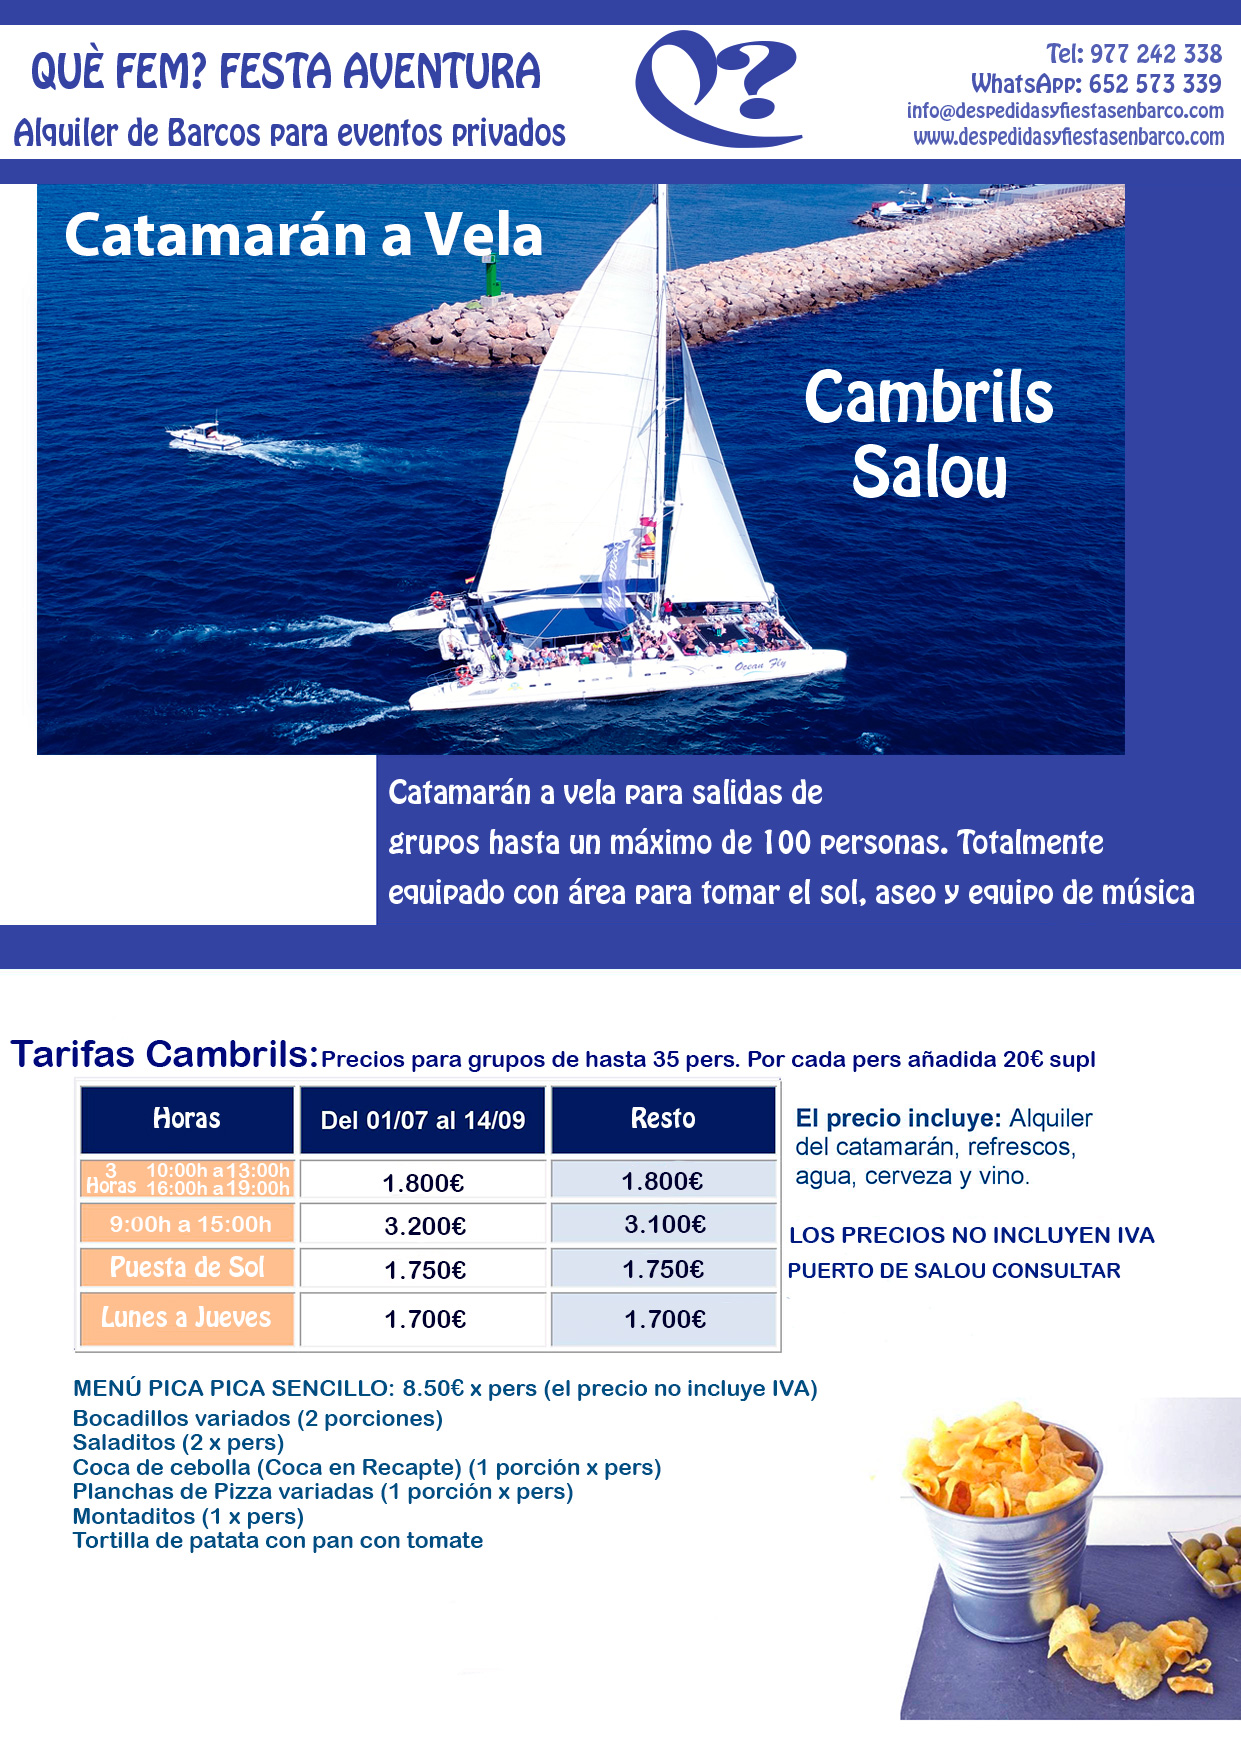 Alquiler de Barcos para fiestas privadas en Tarragona, Salou y Cambrils